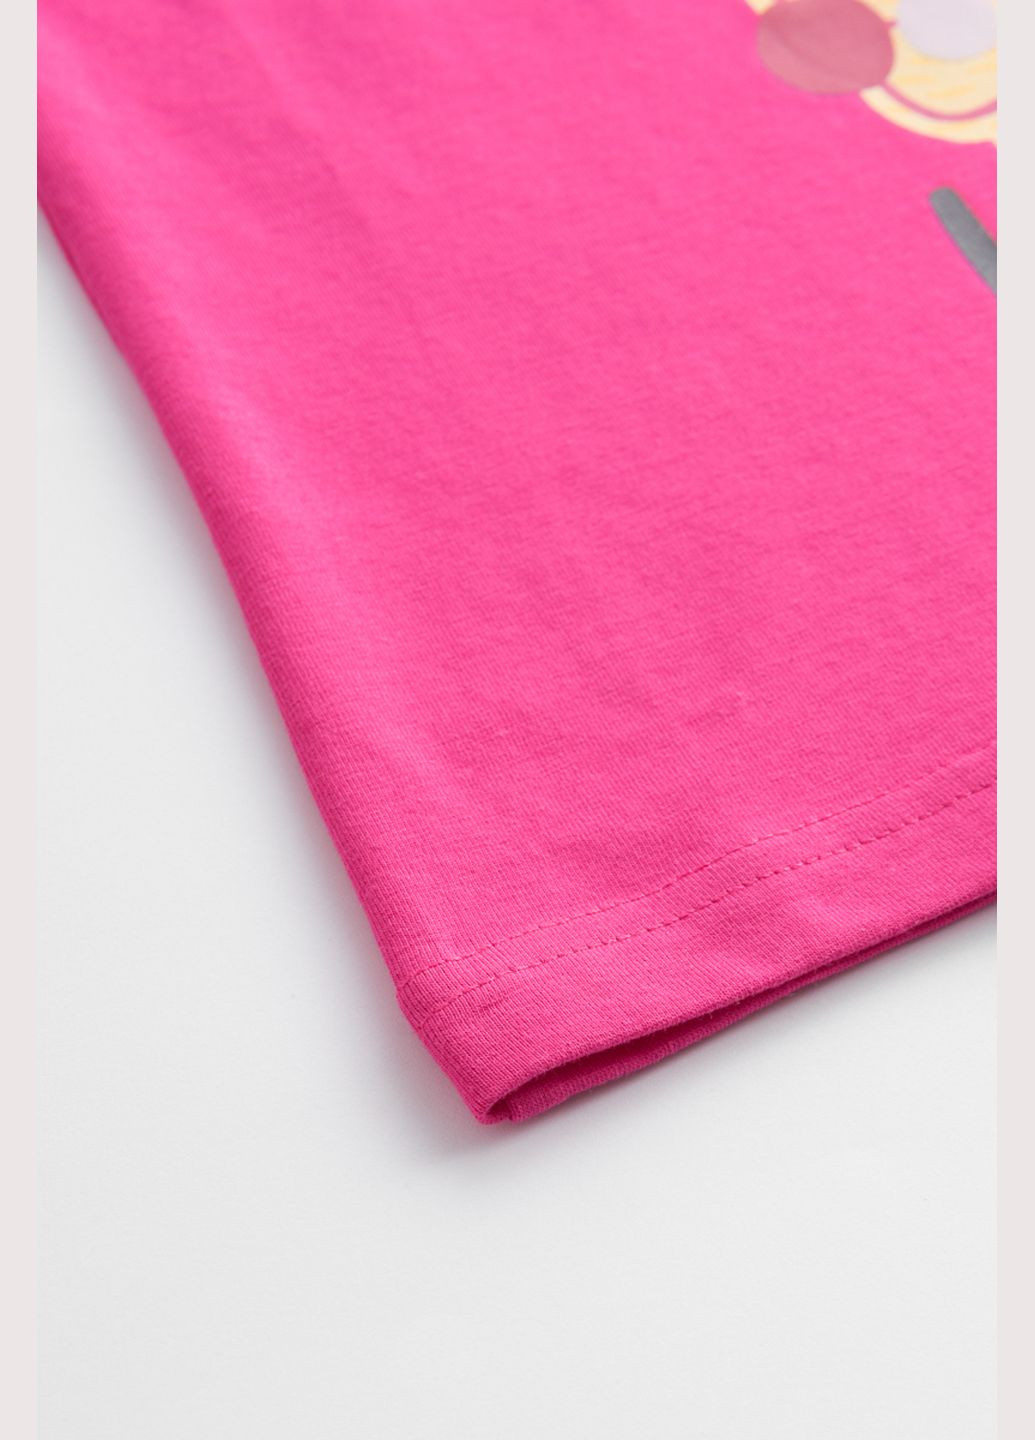 Темно-розовая летняя футболка Coccodrillo